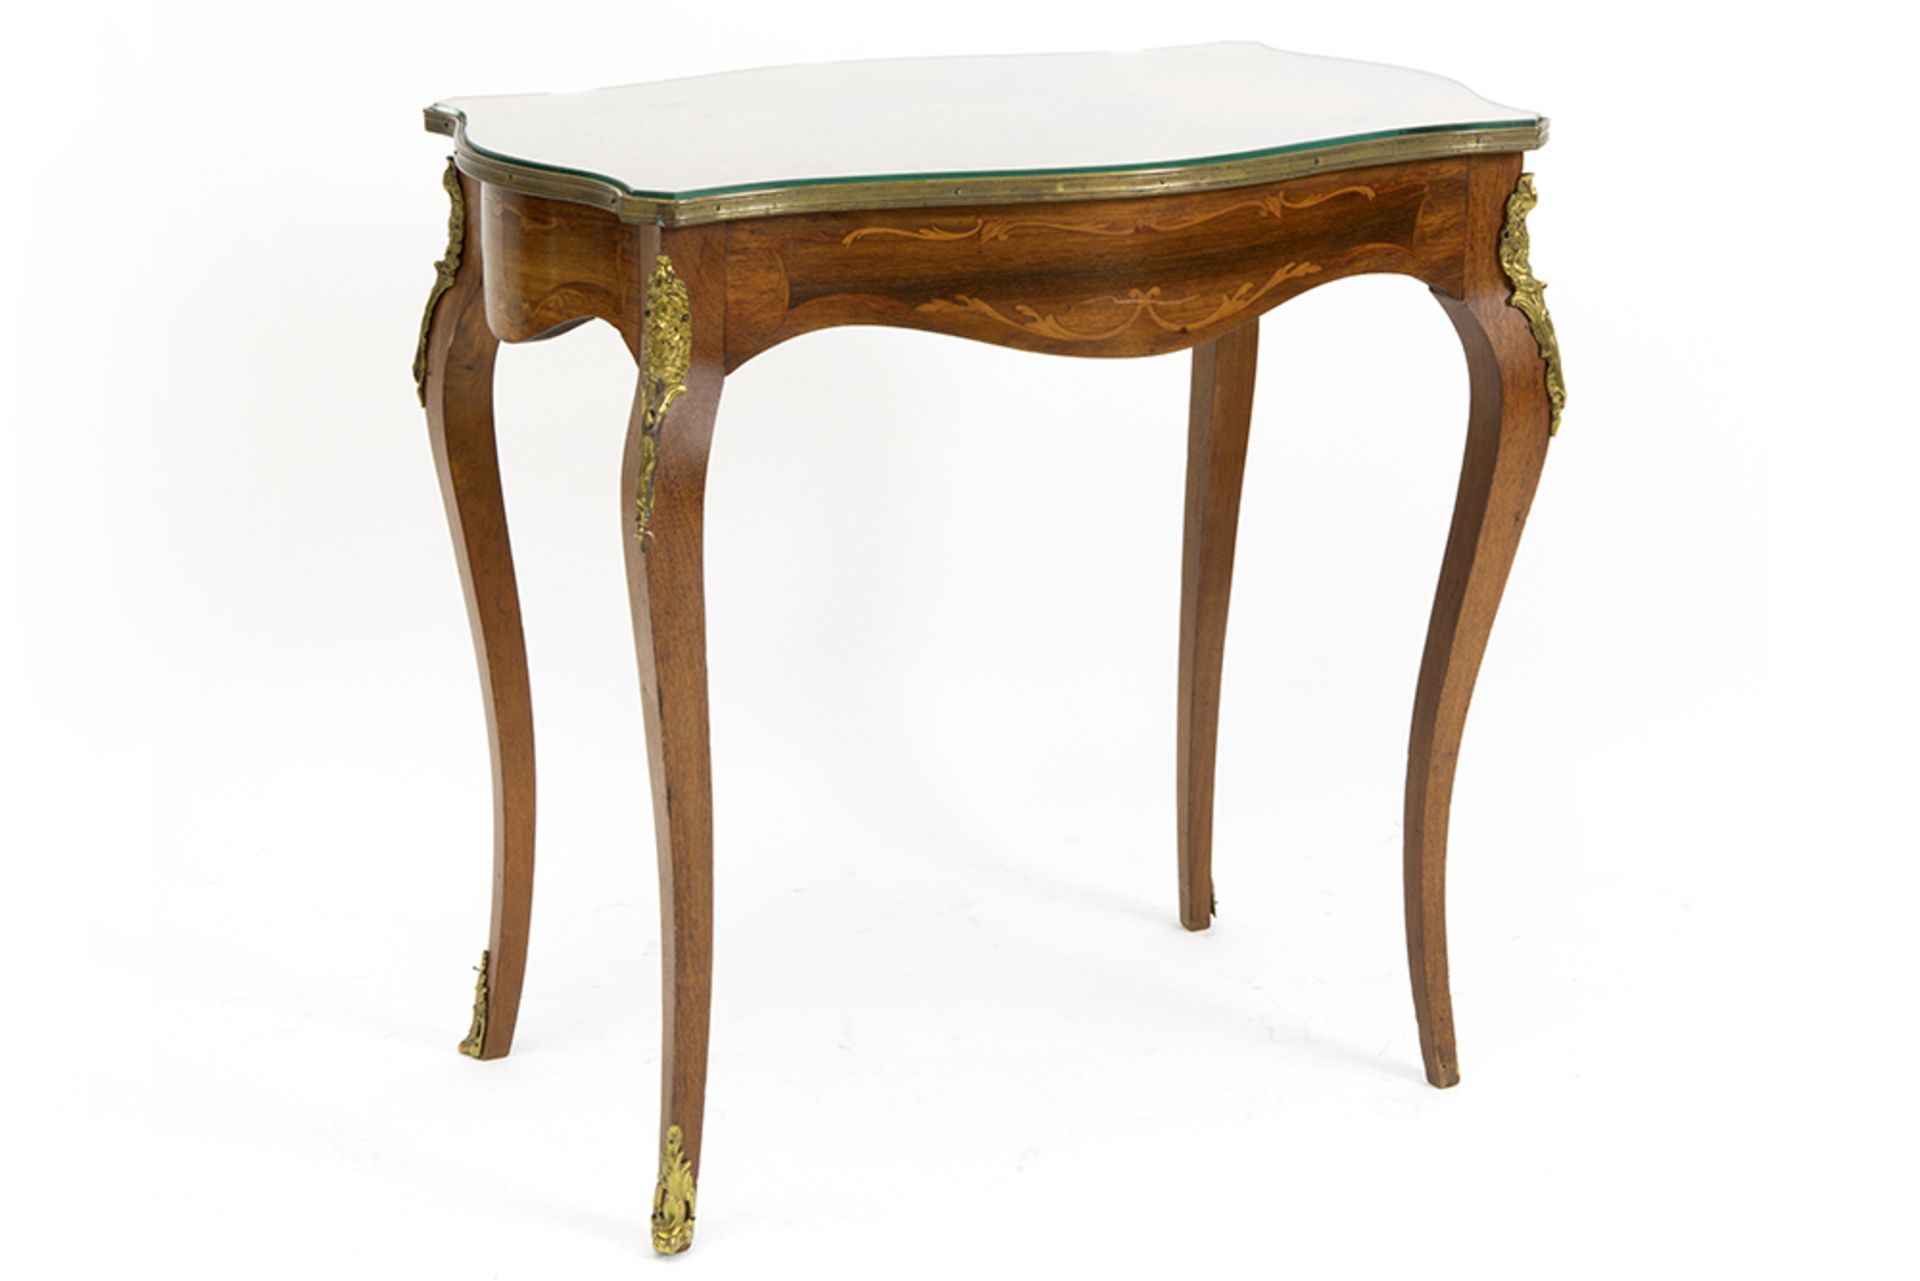 Louis XV style occasional table with marquetry || Bijzettafel in Lodewijk XV-stijl versierd met